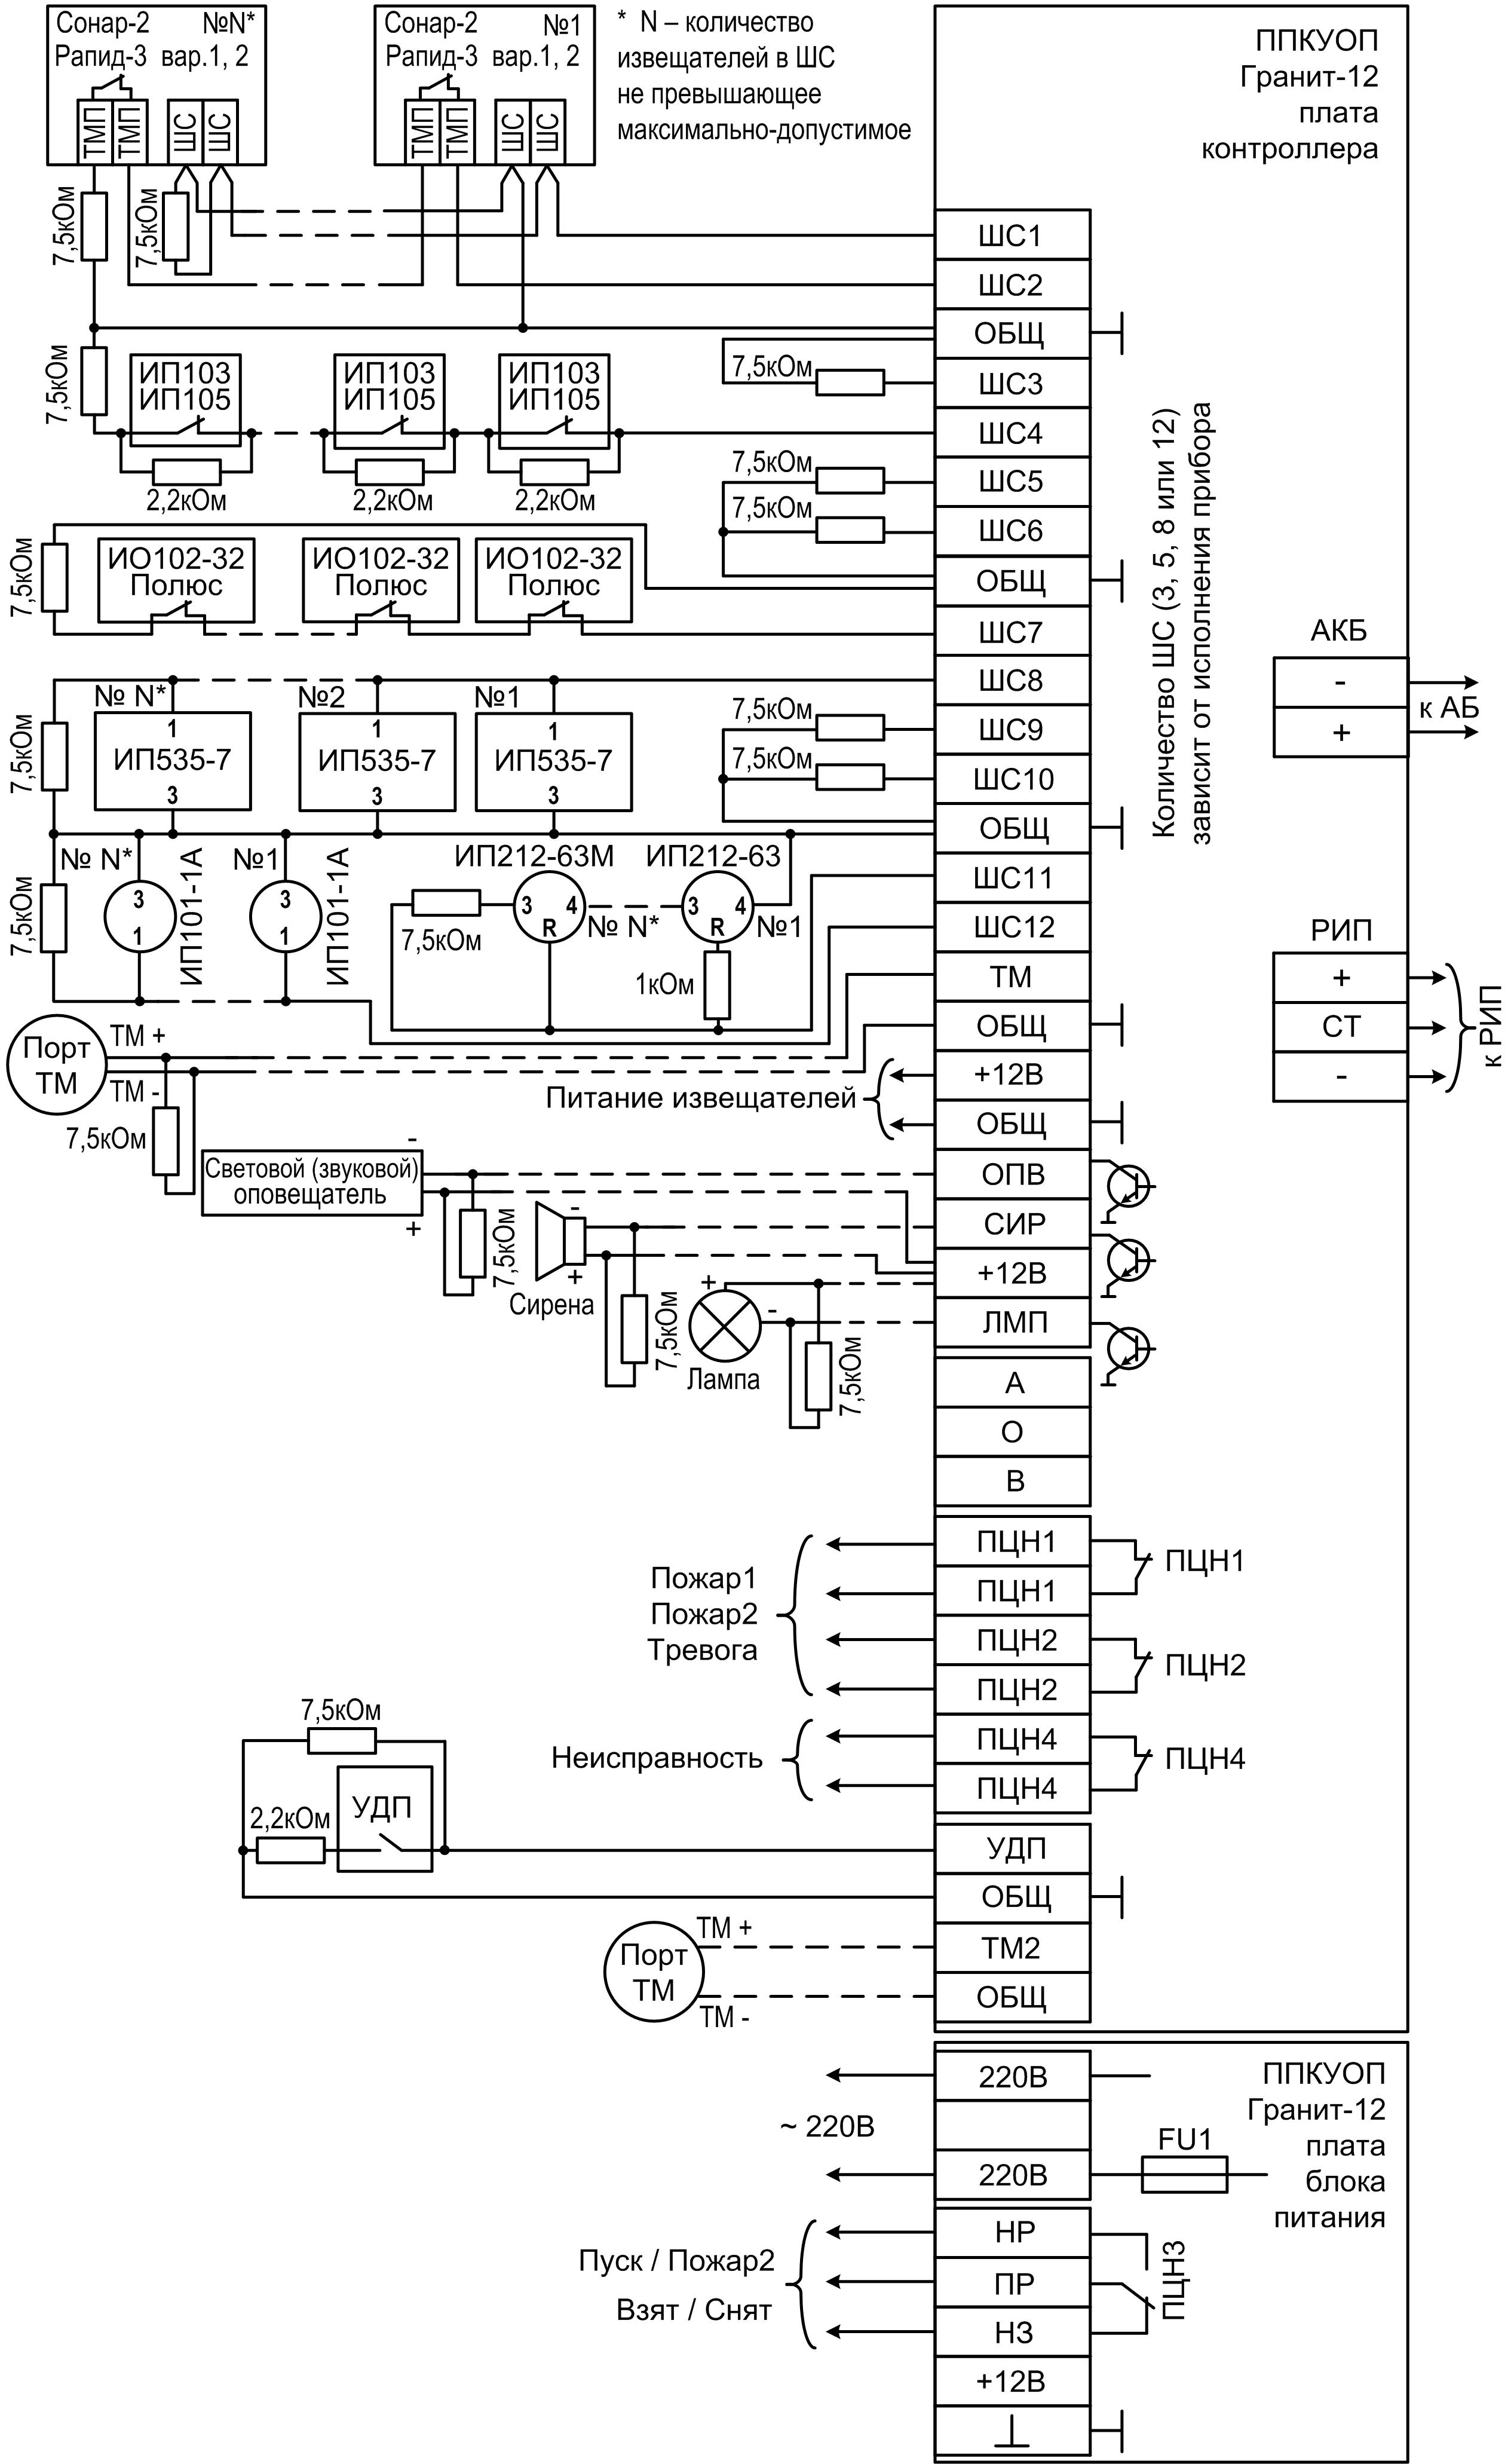 Схема подключения Гранит-12